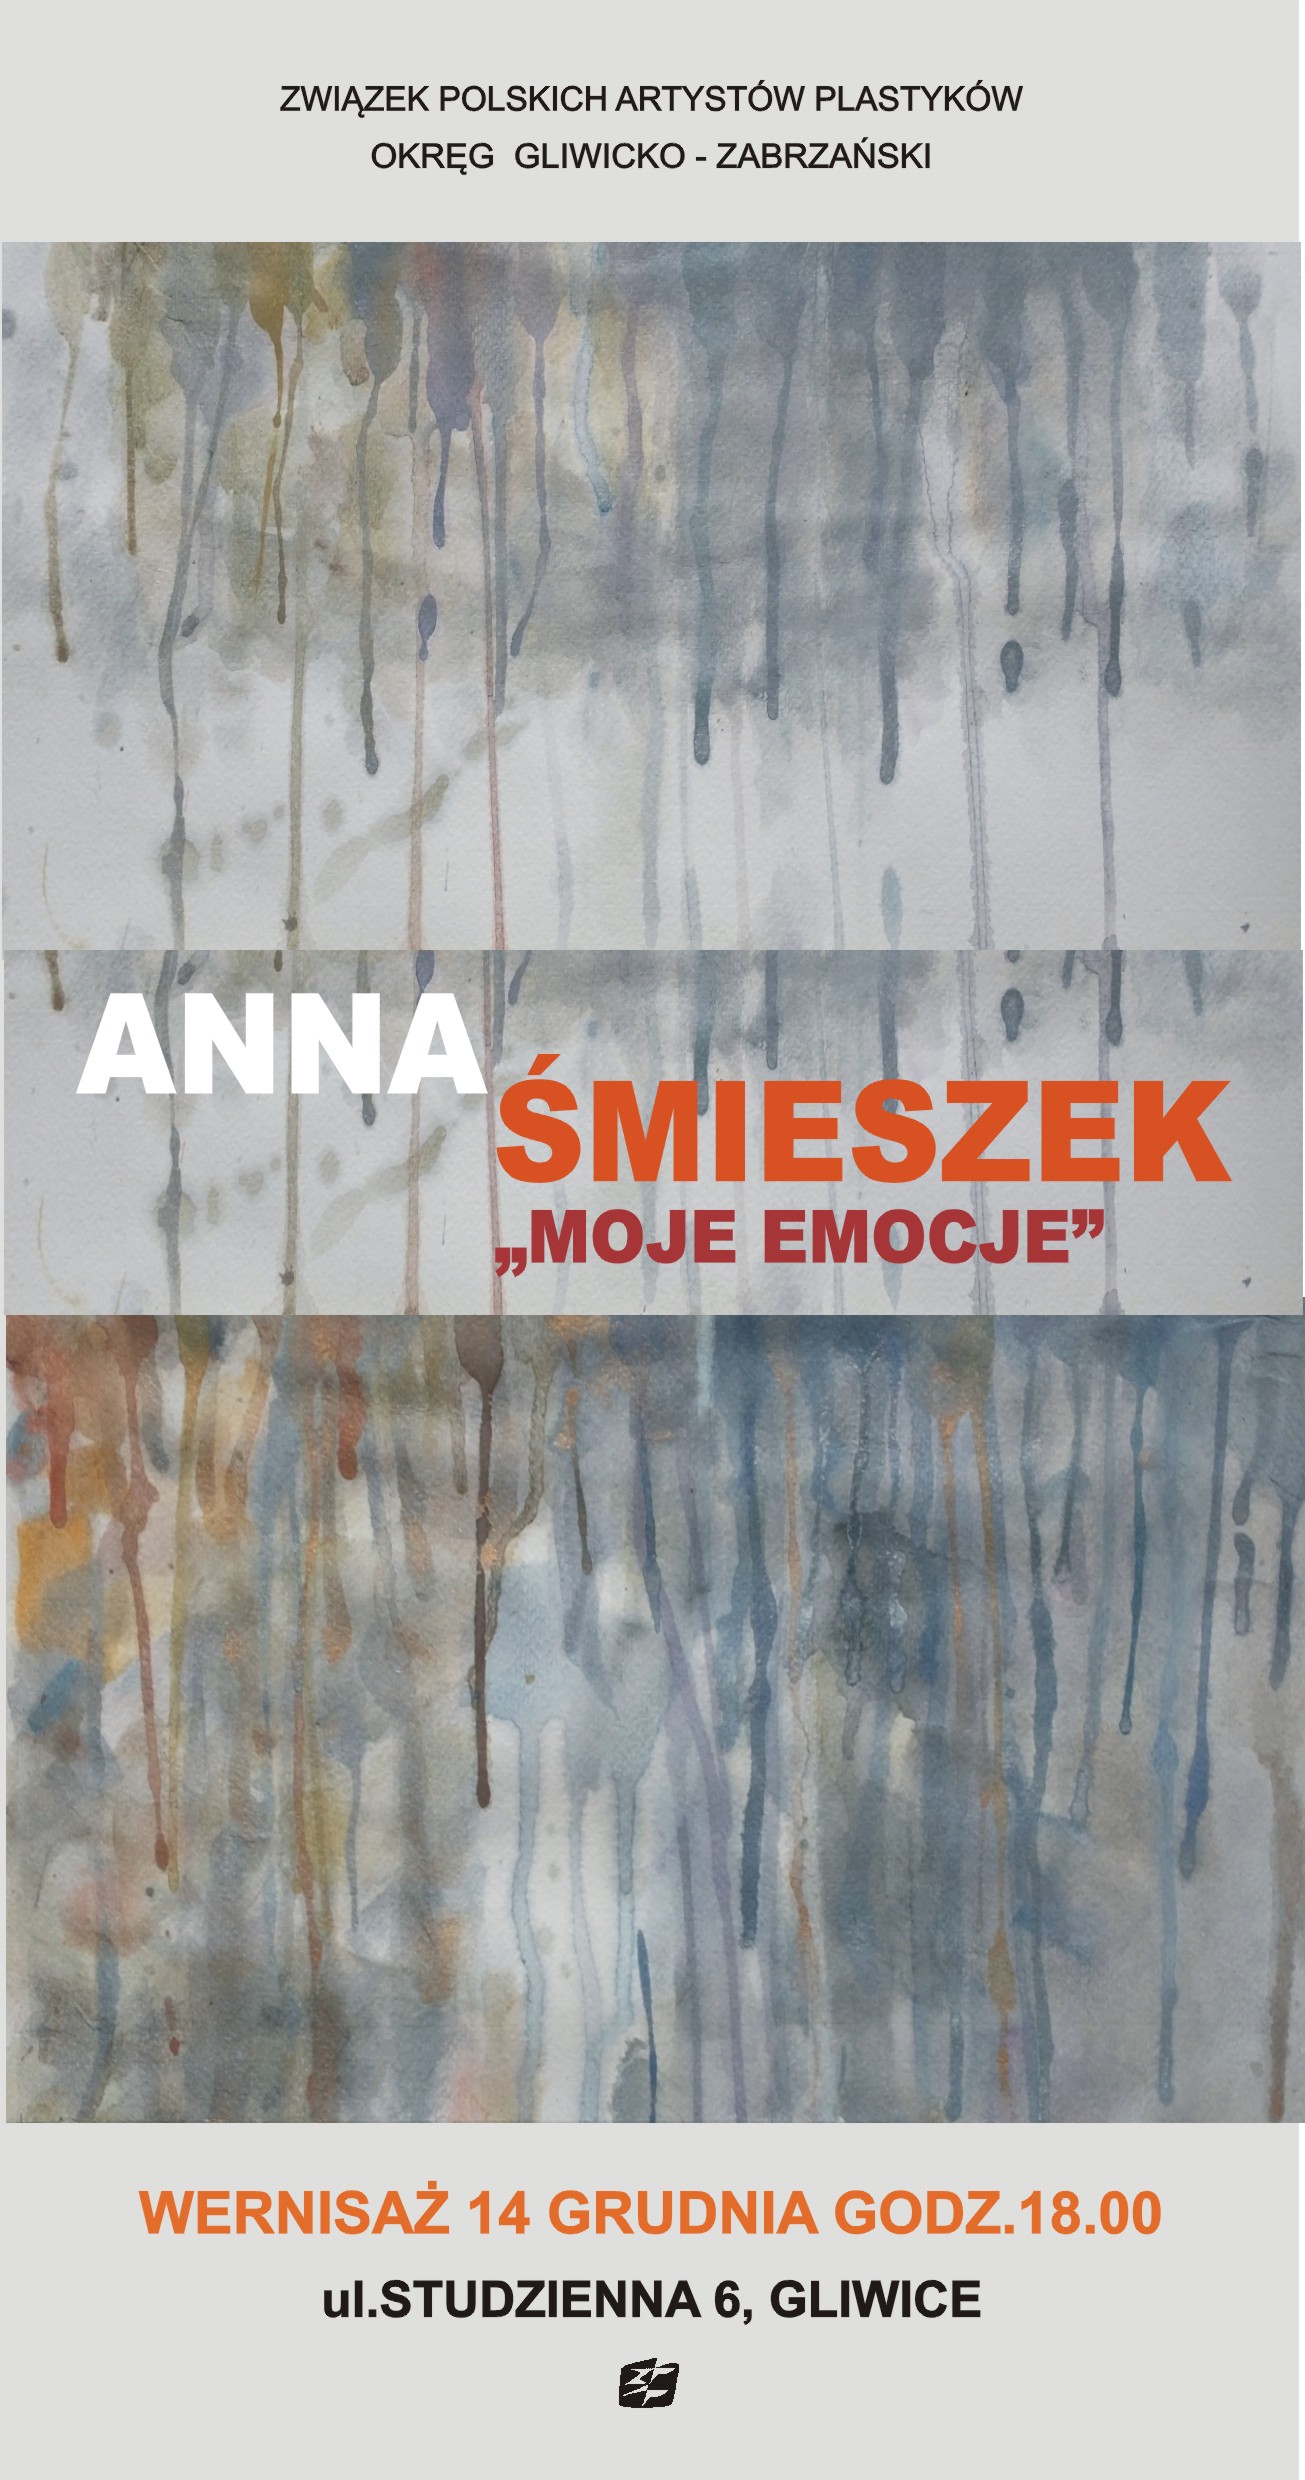 "MOJE EMOCJE" - Anna Śmieszek